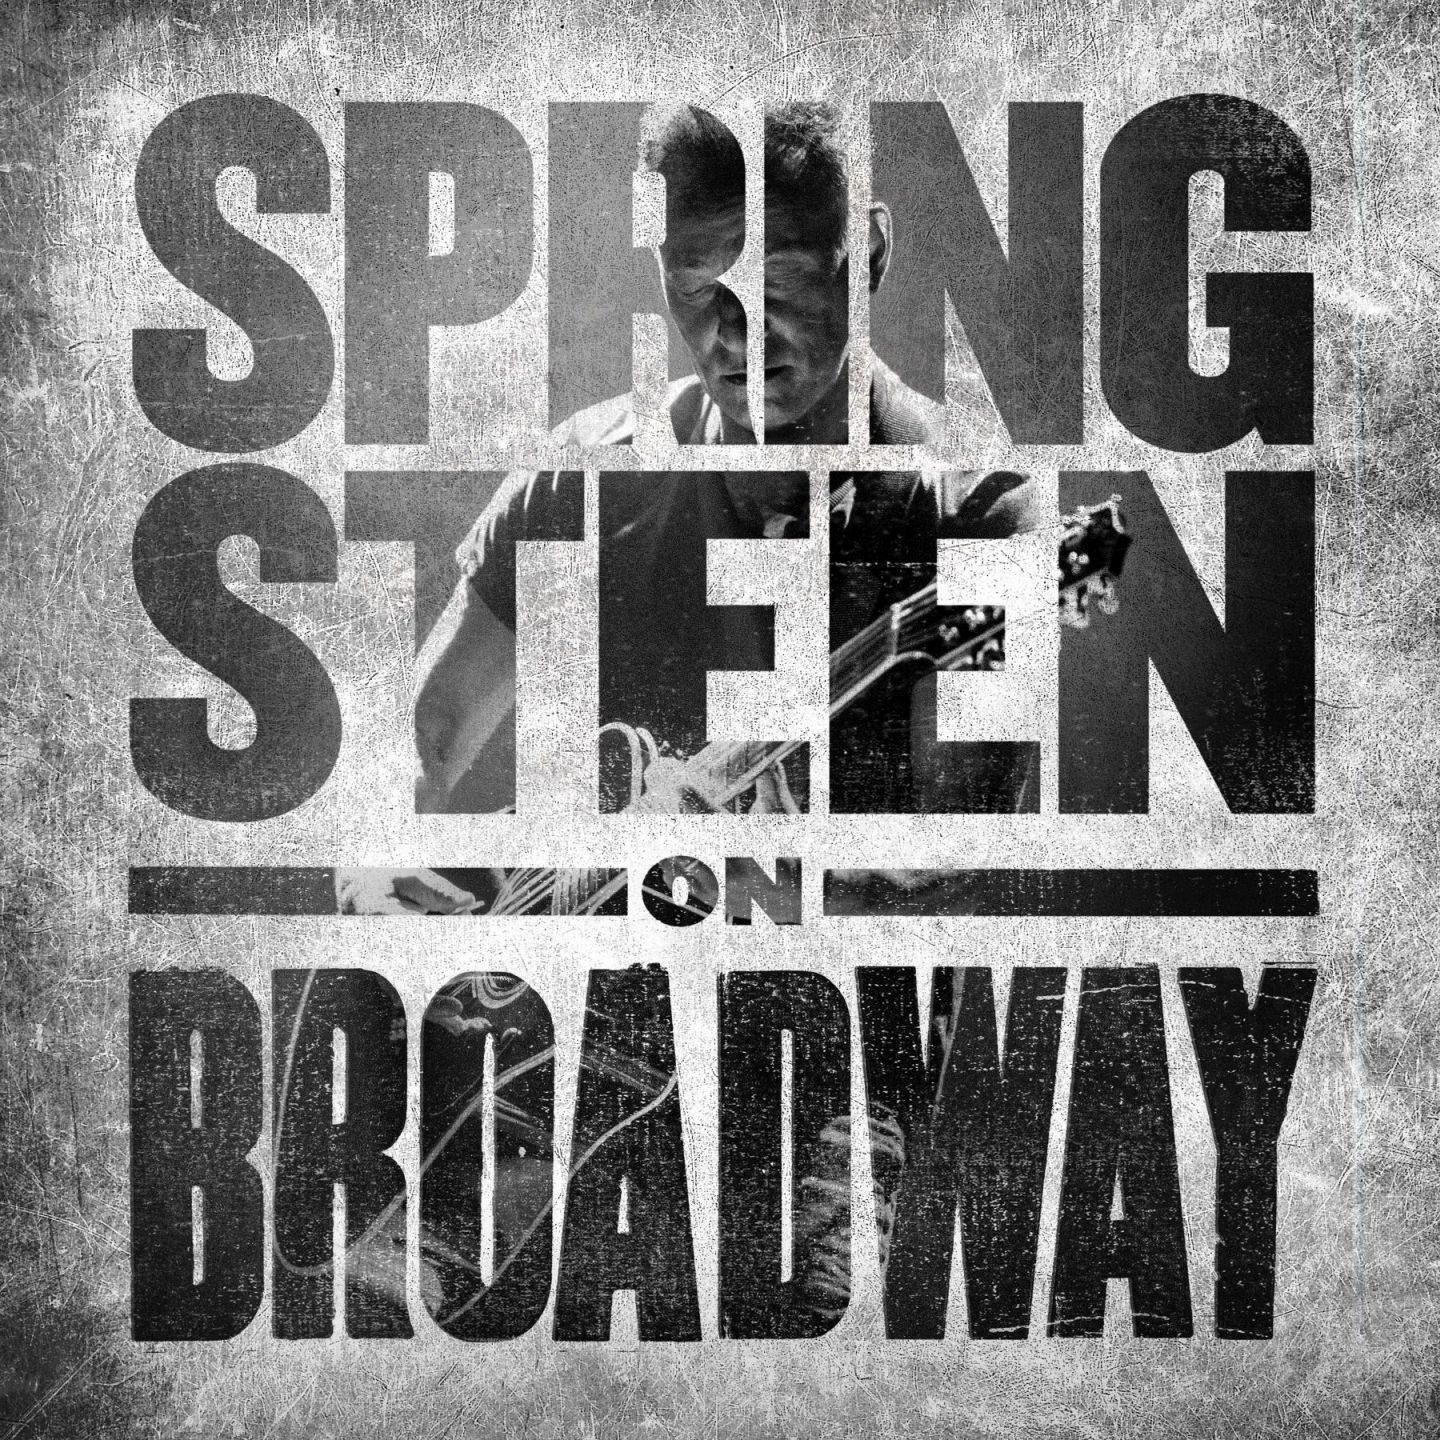 Bruce Springsteen - zapis niezwykłego występu Springsteen On Broadway na płytach CD i LP już 14 grudnia!